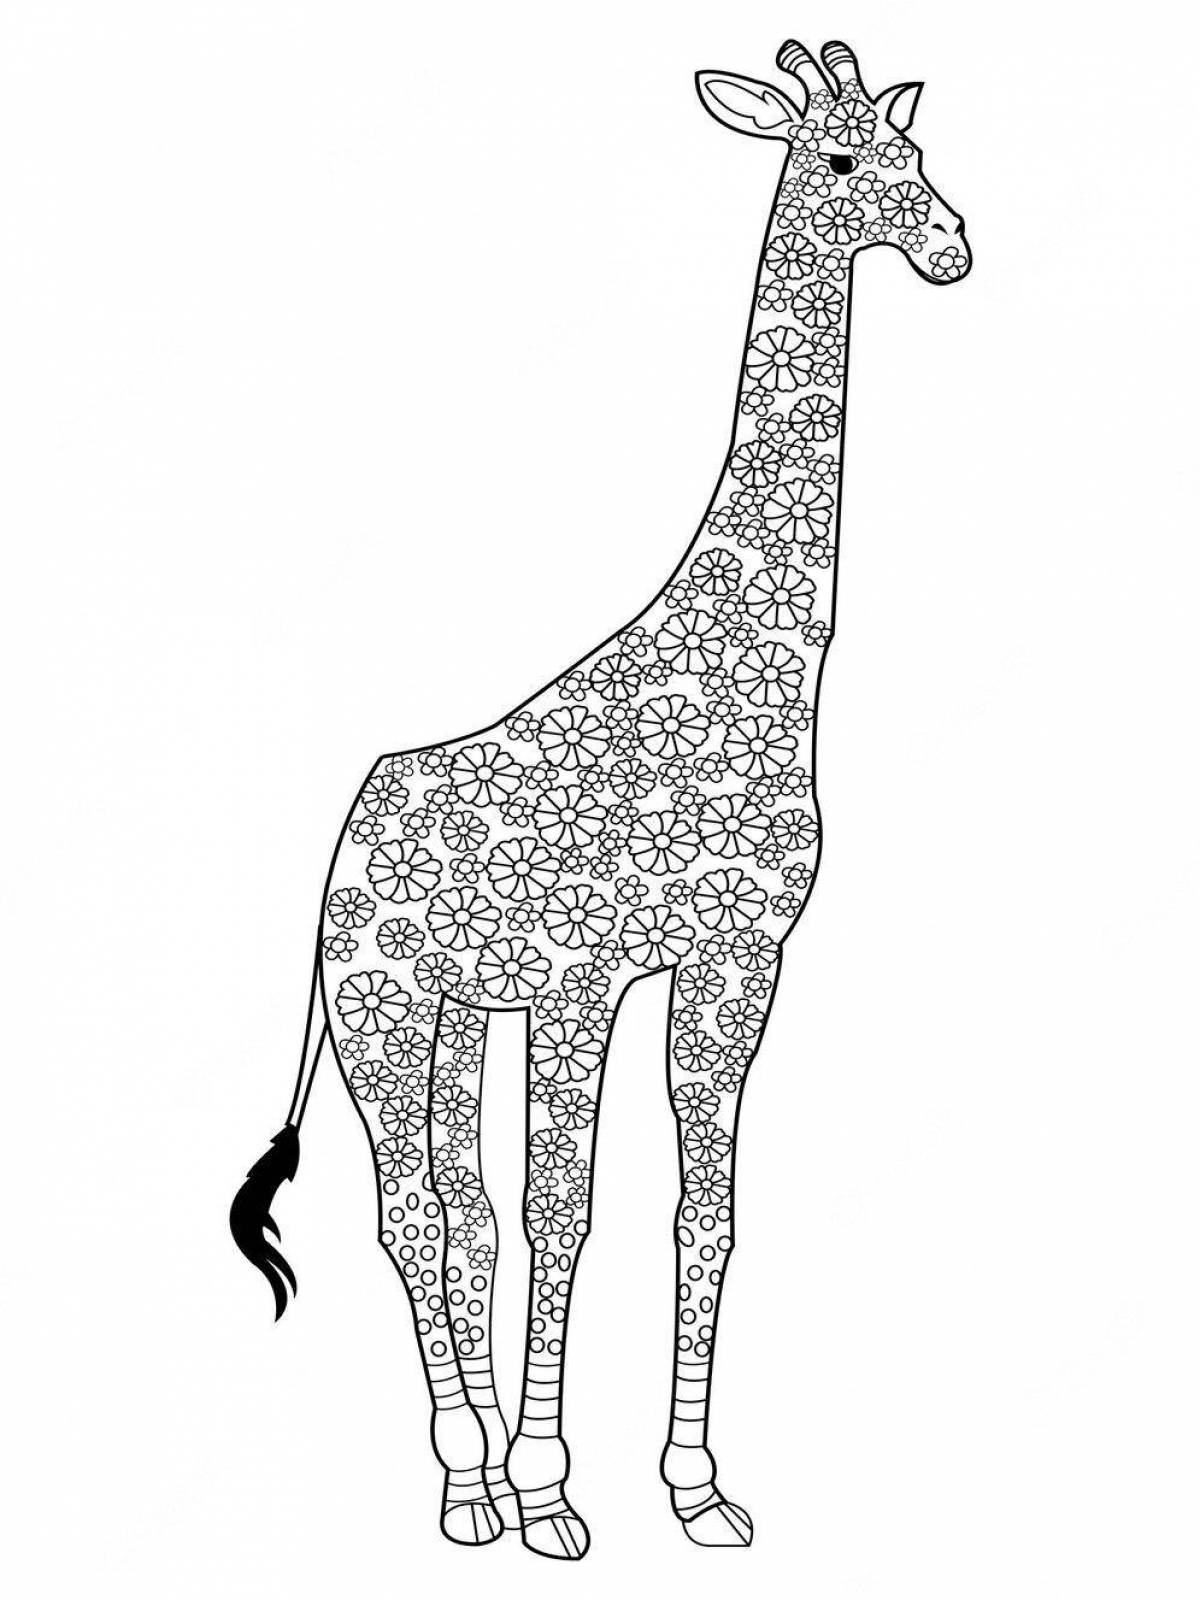 Величественный жираф adopt mi coloring page